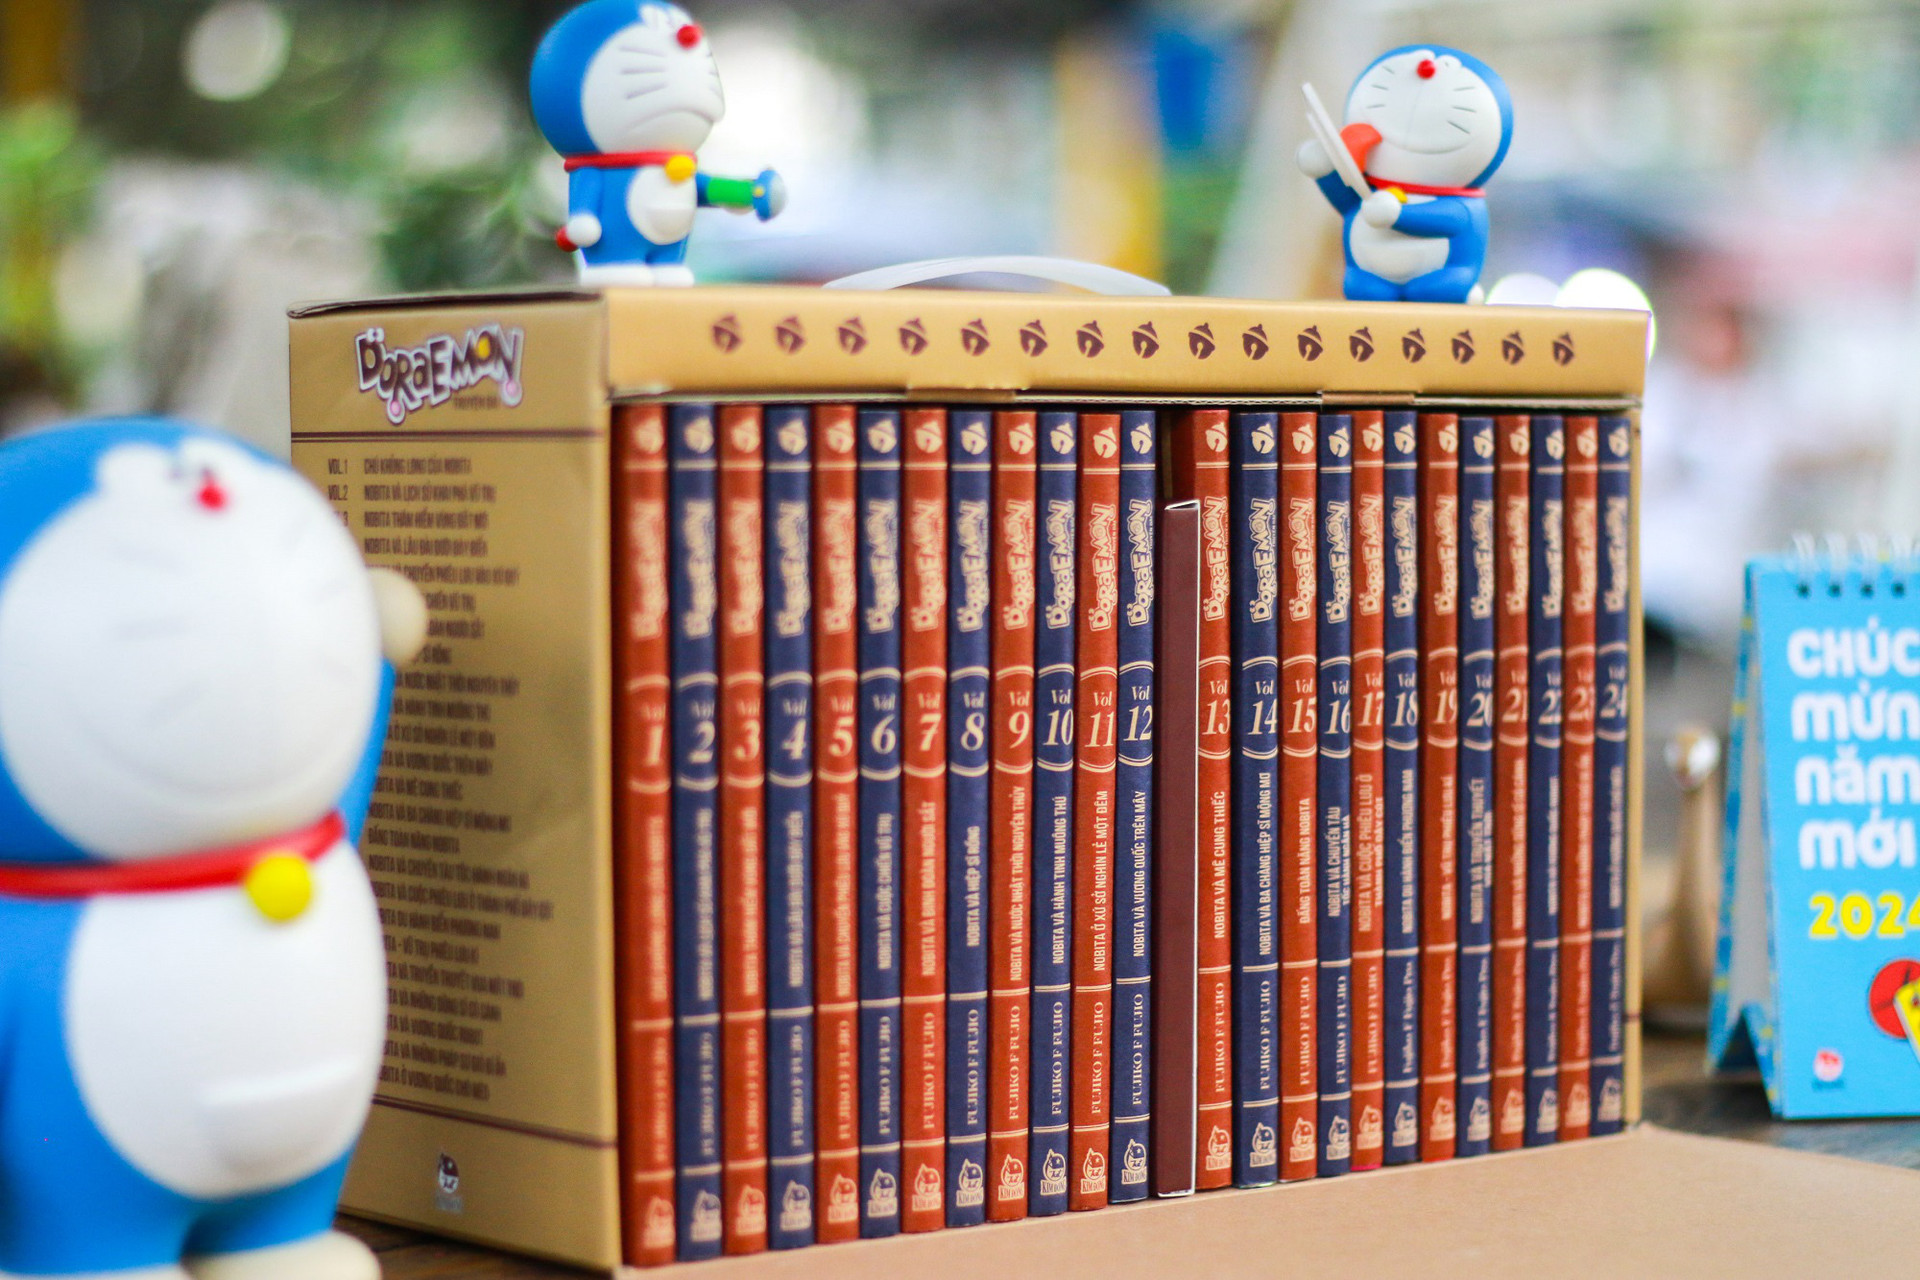 24 tập truyện dài Doraemon được gói gọn trong hộp vali xách tay - Ảnh: Nhà xuất bản Kim Đồng